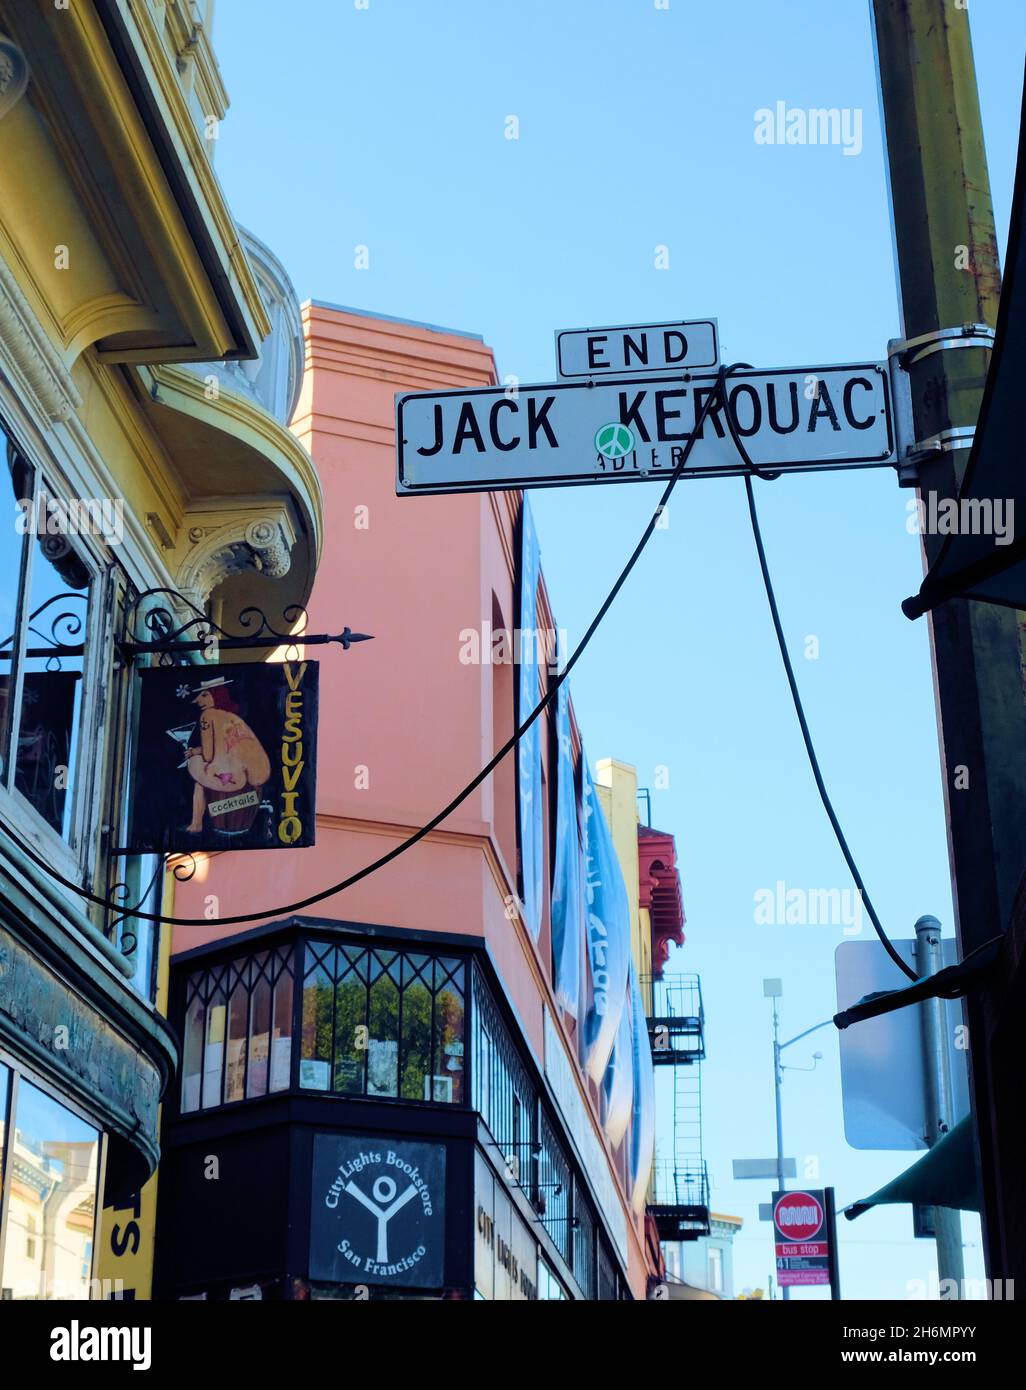 Straßenschild an der Jack Kerouac Alley, ehemals Adler Alley oder Adler Place, in San Francisco, Kaliforniens North Beach-Viertel. Stockfoto